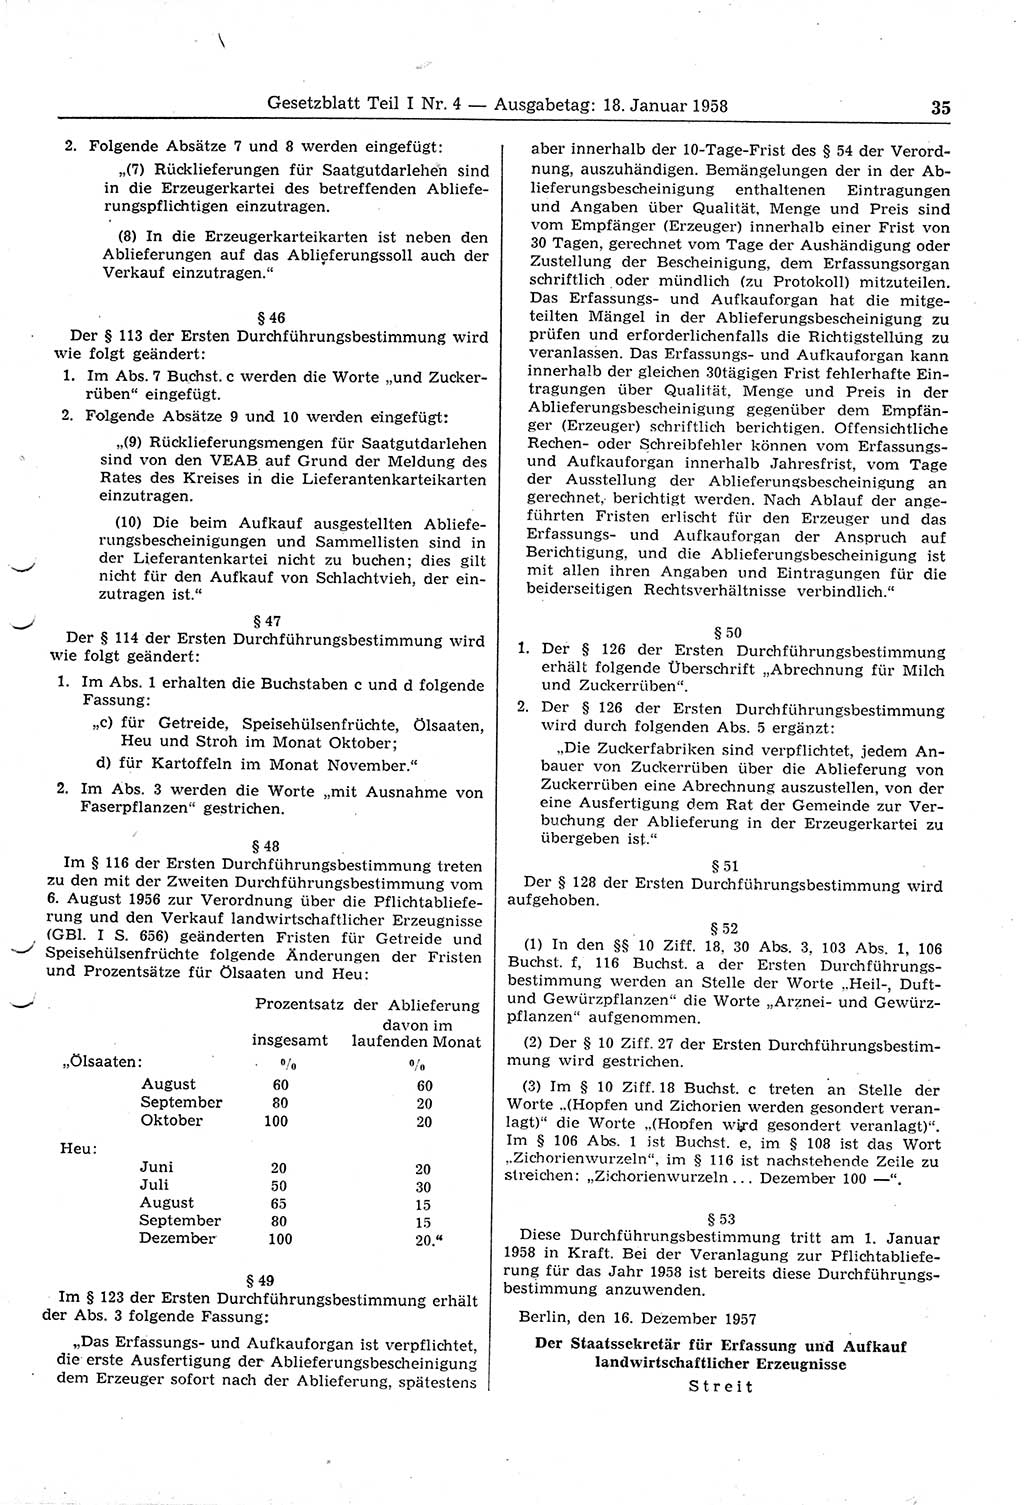 Gesetzblatt (GBl.) der Deutschen Demokratischen Republik (DDR) Teil Ⅰ 1958, Seite 35 (GBl. DDR Ⅰ 1958, S. 35)